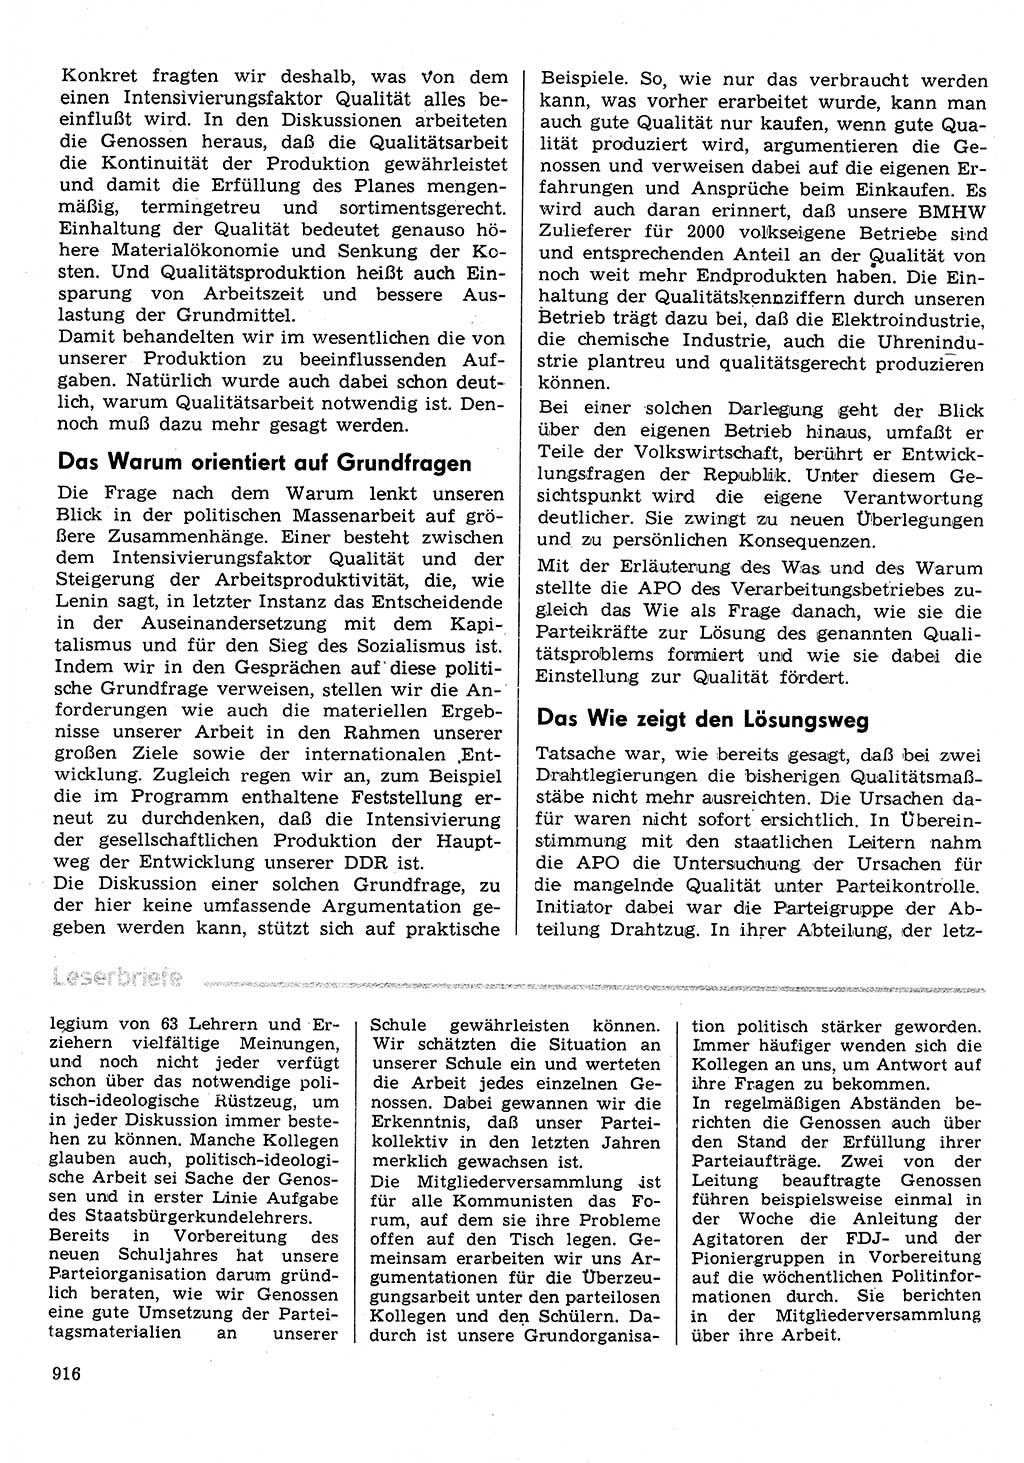 Neuer Weg (NW), Organ des Zentralkomitees (ZK) der SED (Sozialistische Einheitspartei Deutschlands) für Fragen des Parteilebens, 31. Jahrgang [Deutsche Demokratische Republik (DDR)] 1976, Seite 916 (NW ZK SED DDR 1976, S. 916)